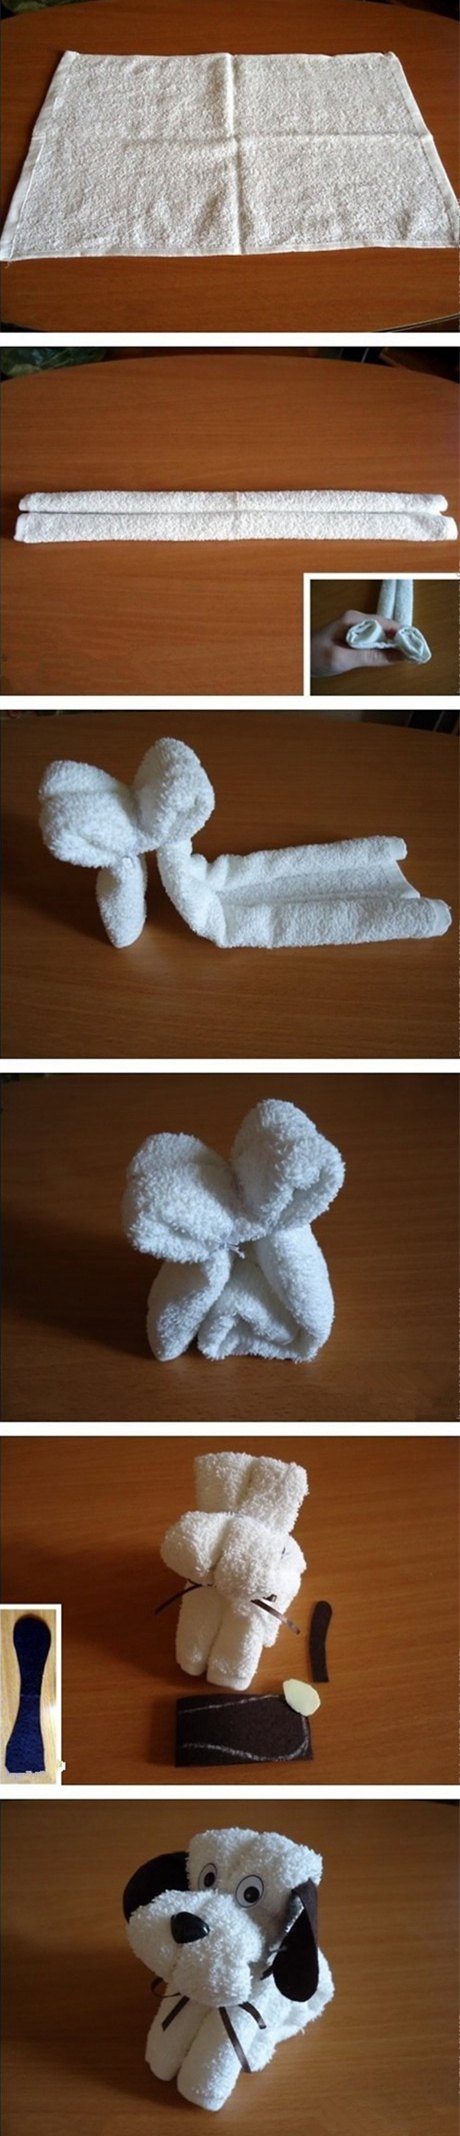 毛巾做一些简单的造型图片